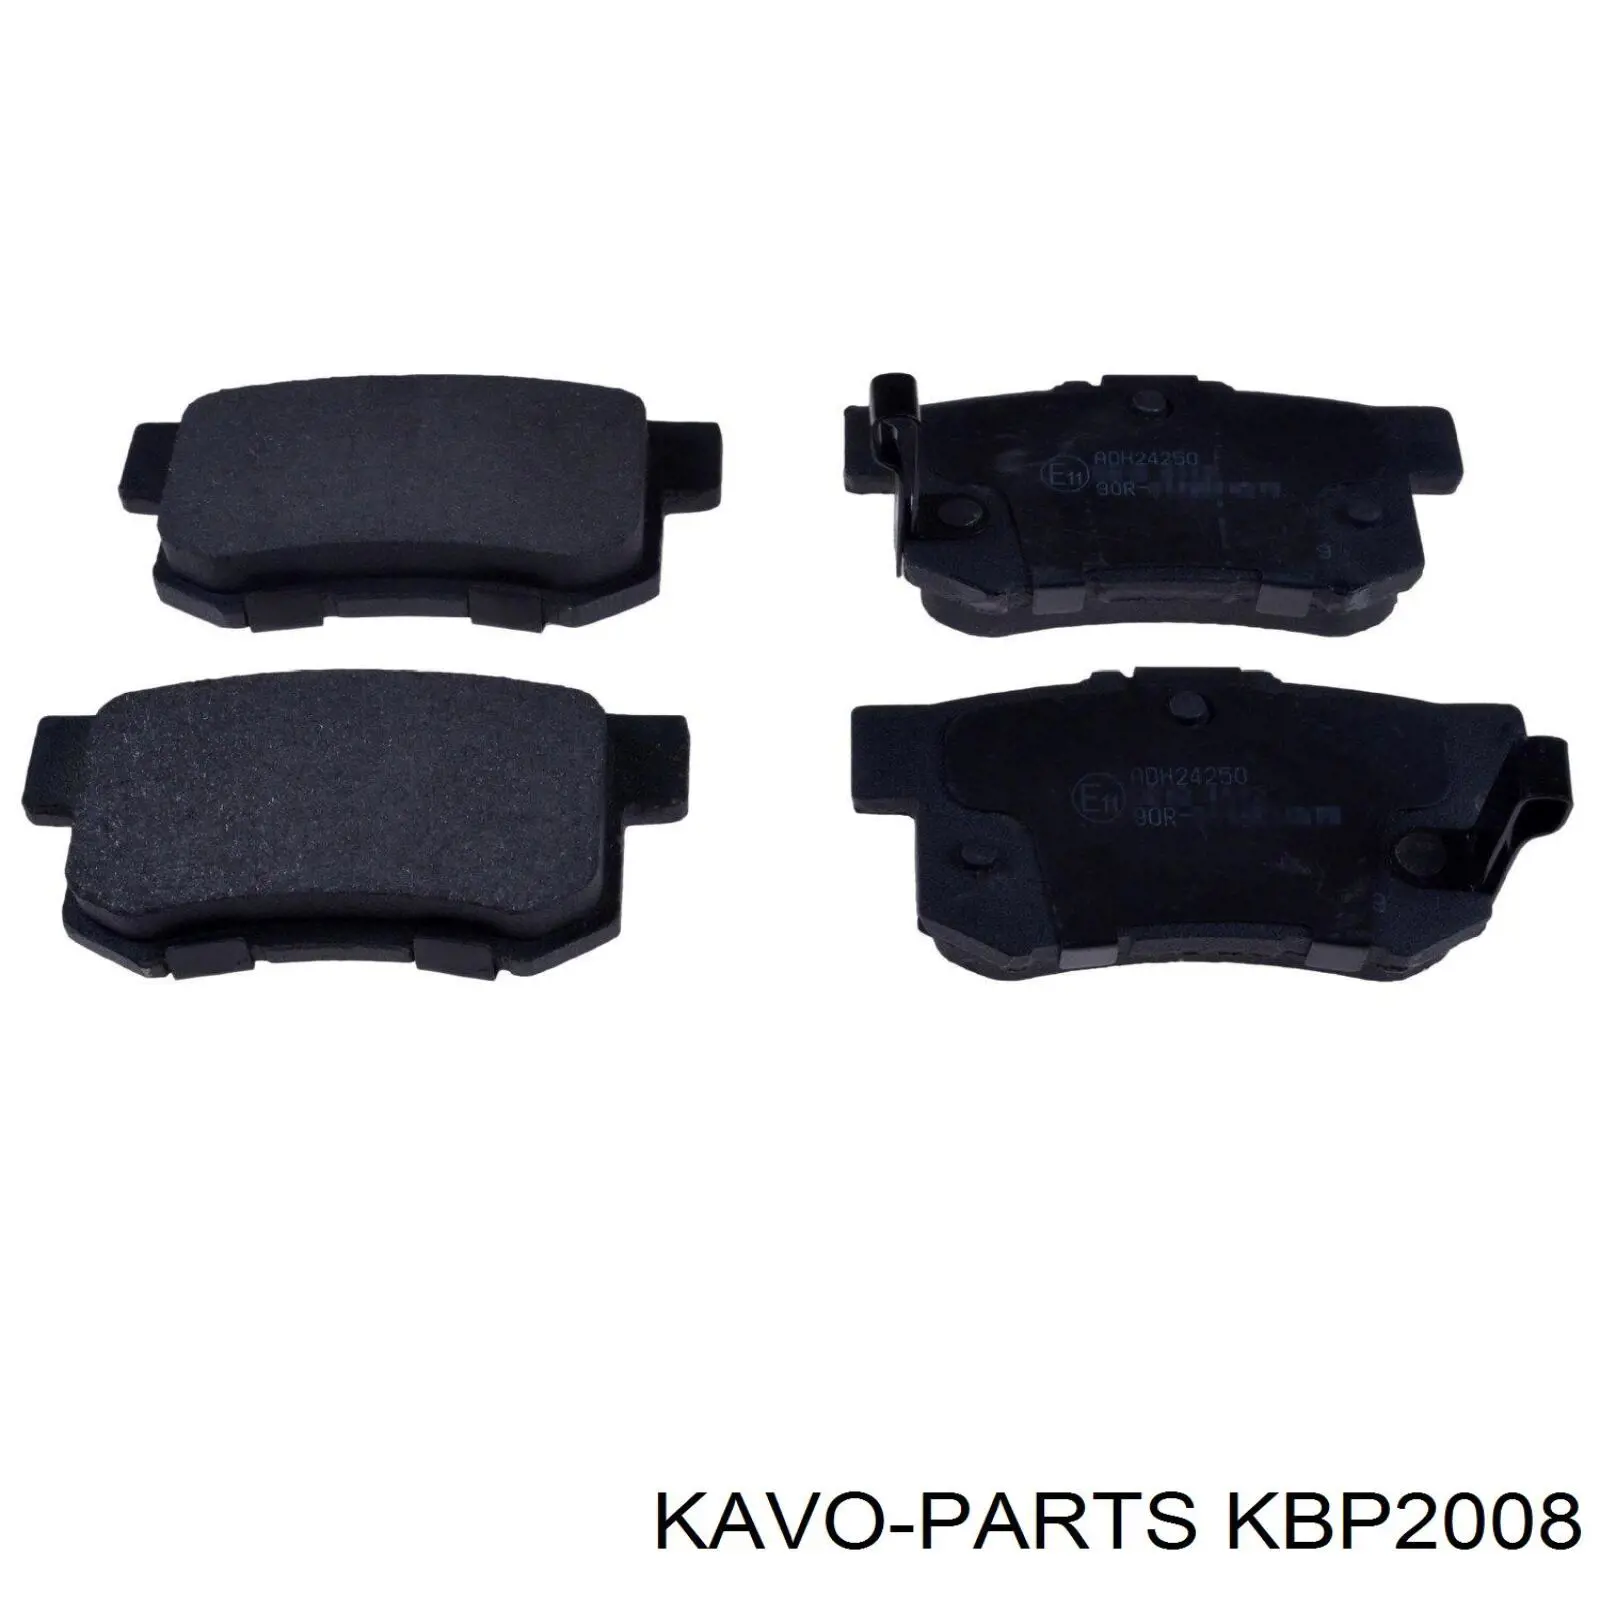 KBP-2008 Kavo Parts pastillas de freno traseras